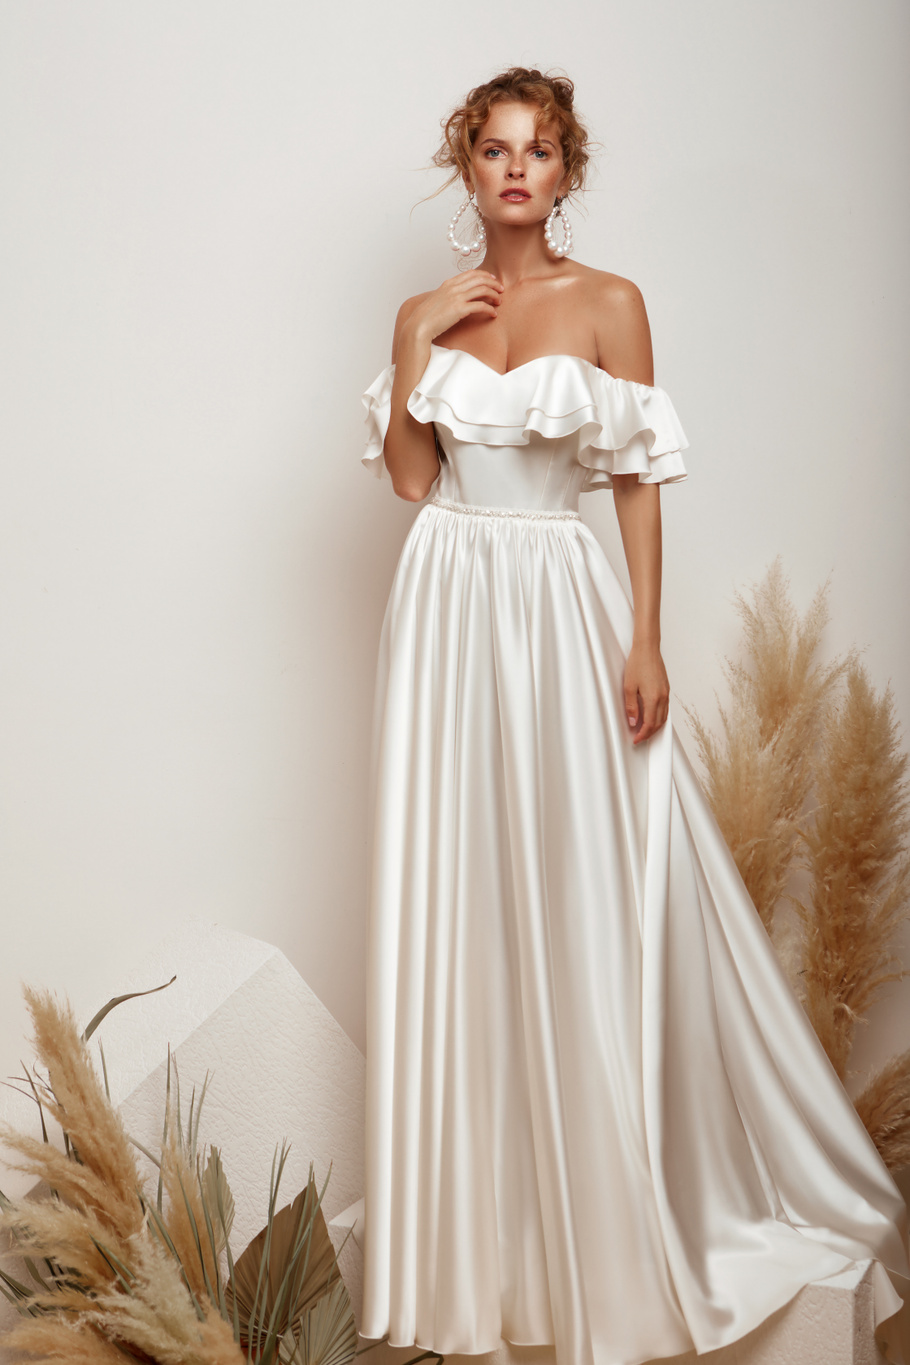 Купить свадебное платье «Магнолия» Мэрри Марк из коллекции 2020 года в Ярославле